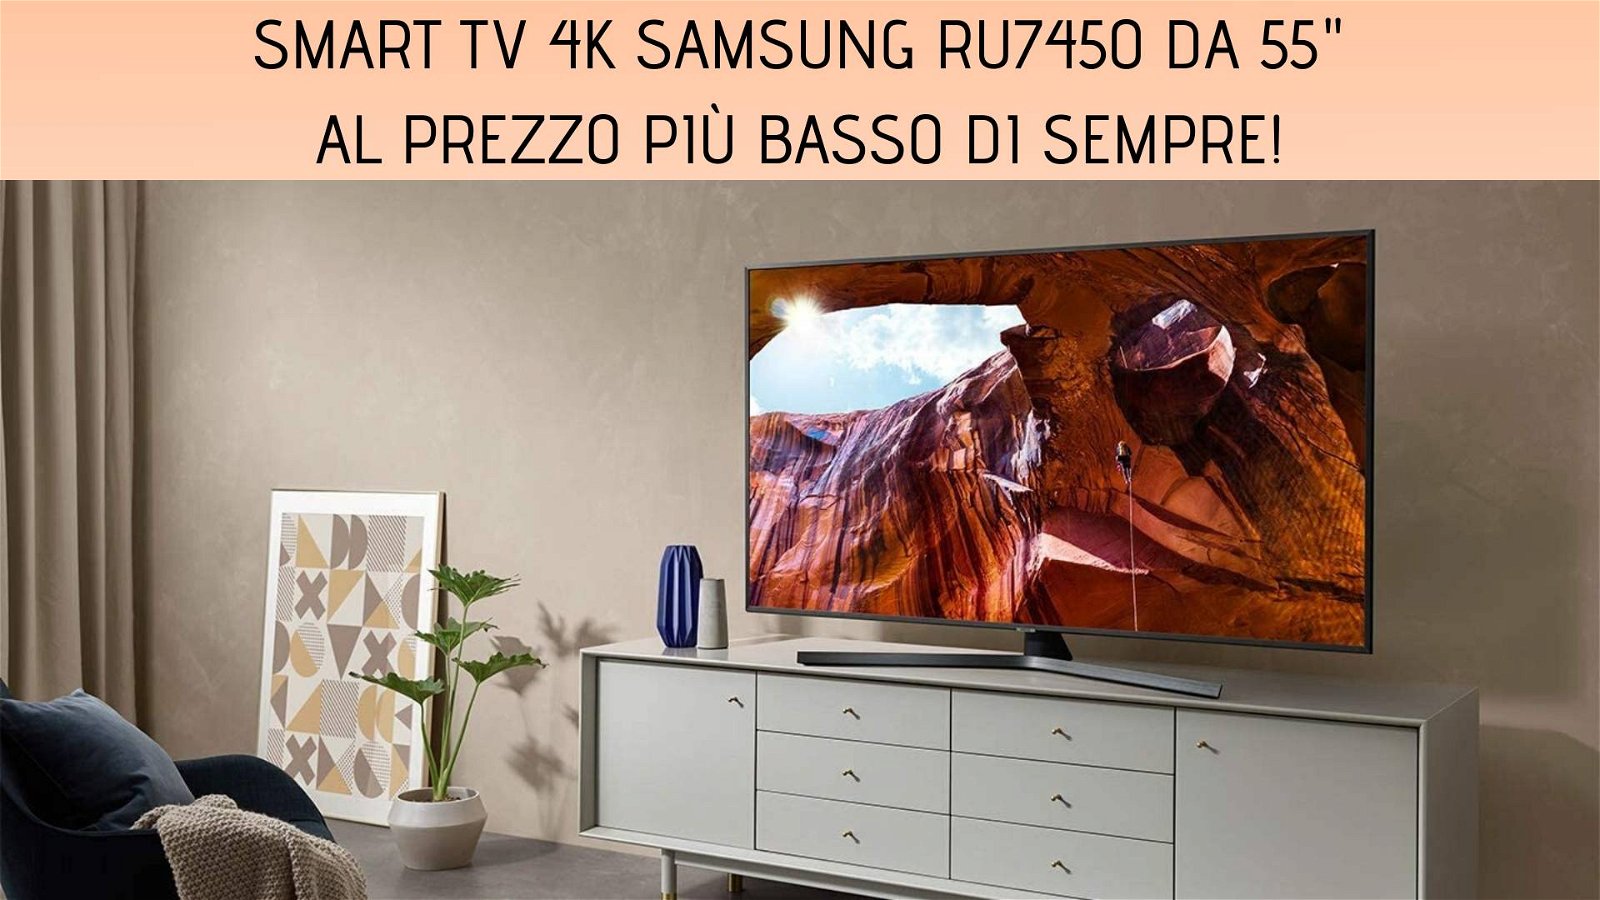 Immagine di Smart TV 4K Samsung RU7450 da 55" al prezzo più basso di sempre su Amazon!